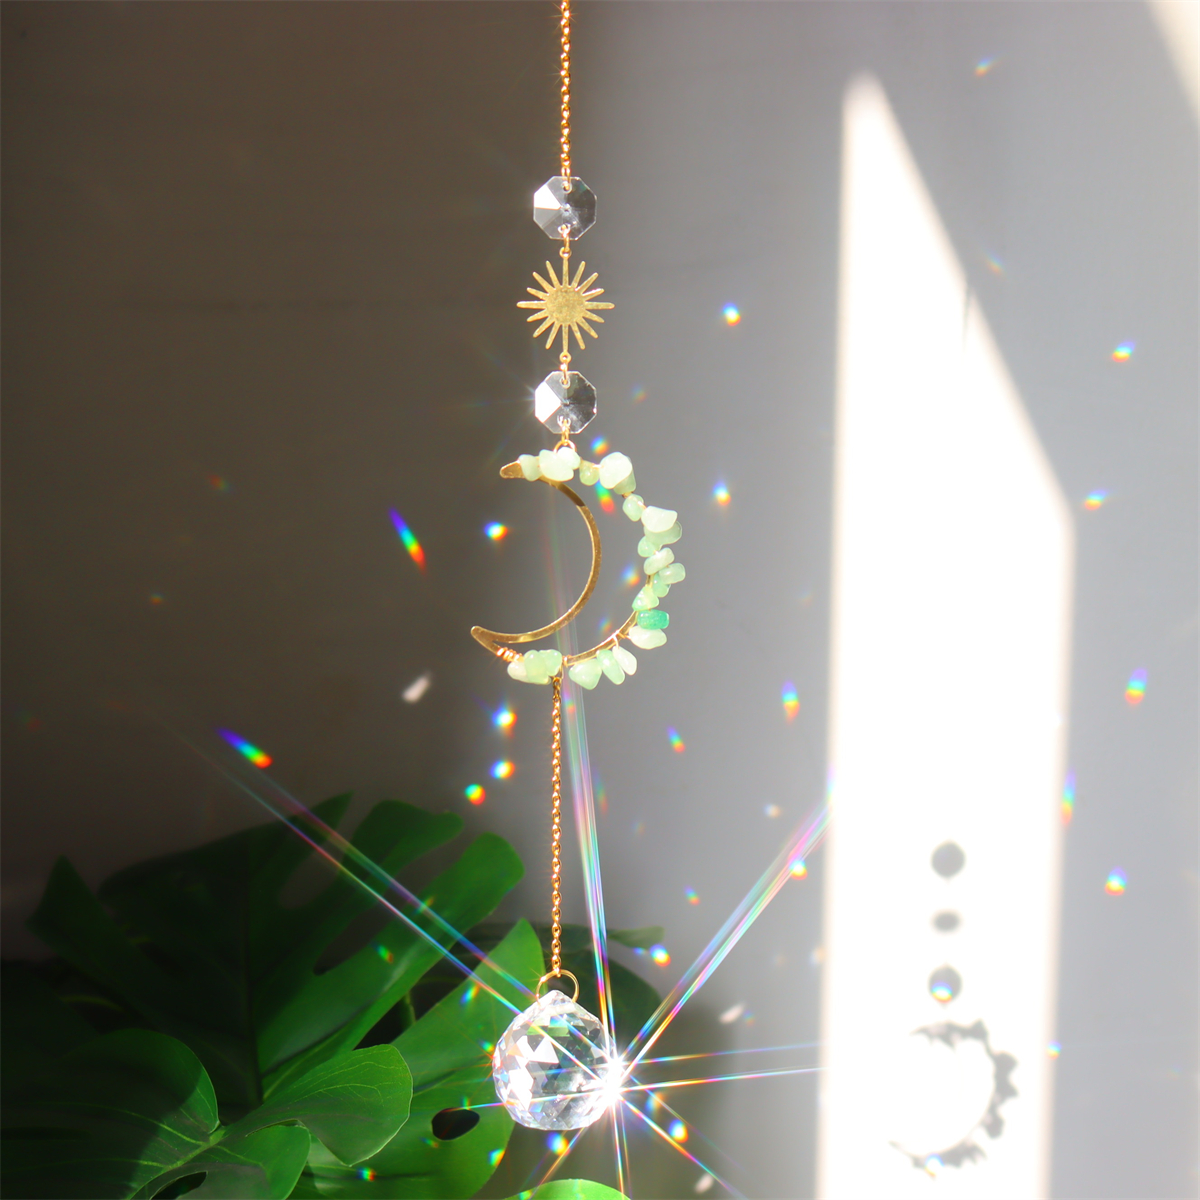 Attrape-soleil en cristal de lune papillon améthyste, cristaux